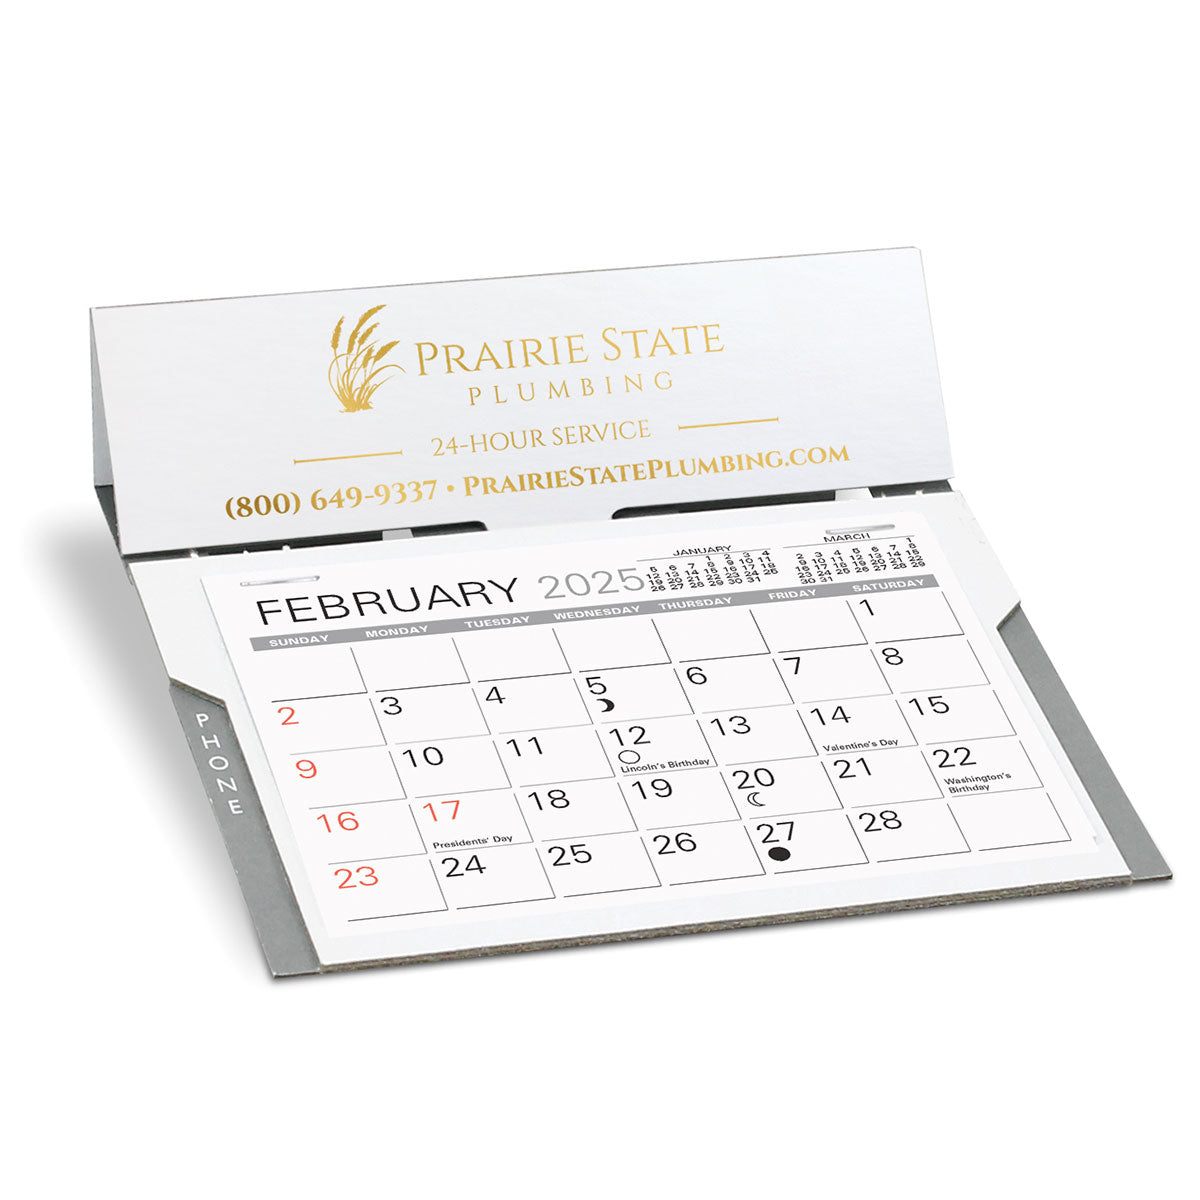 Pacemaker Desk Calendar